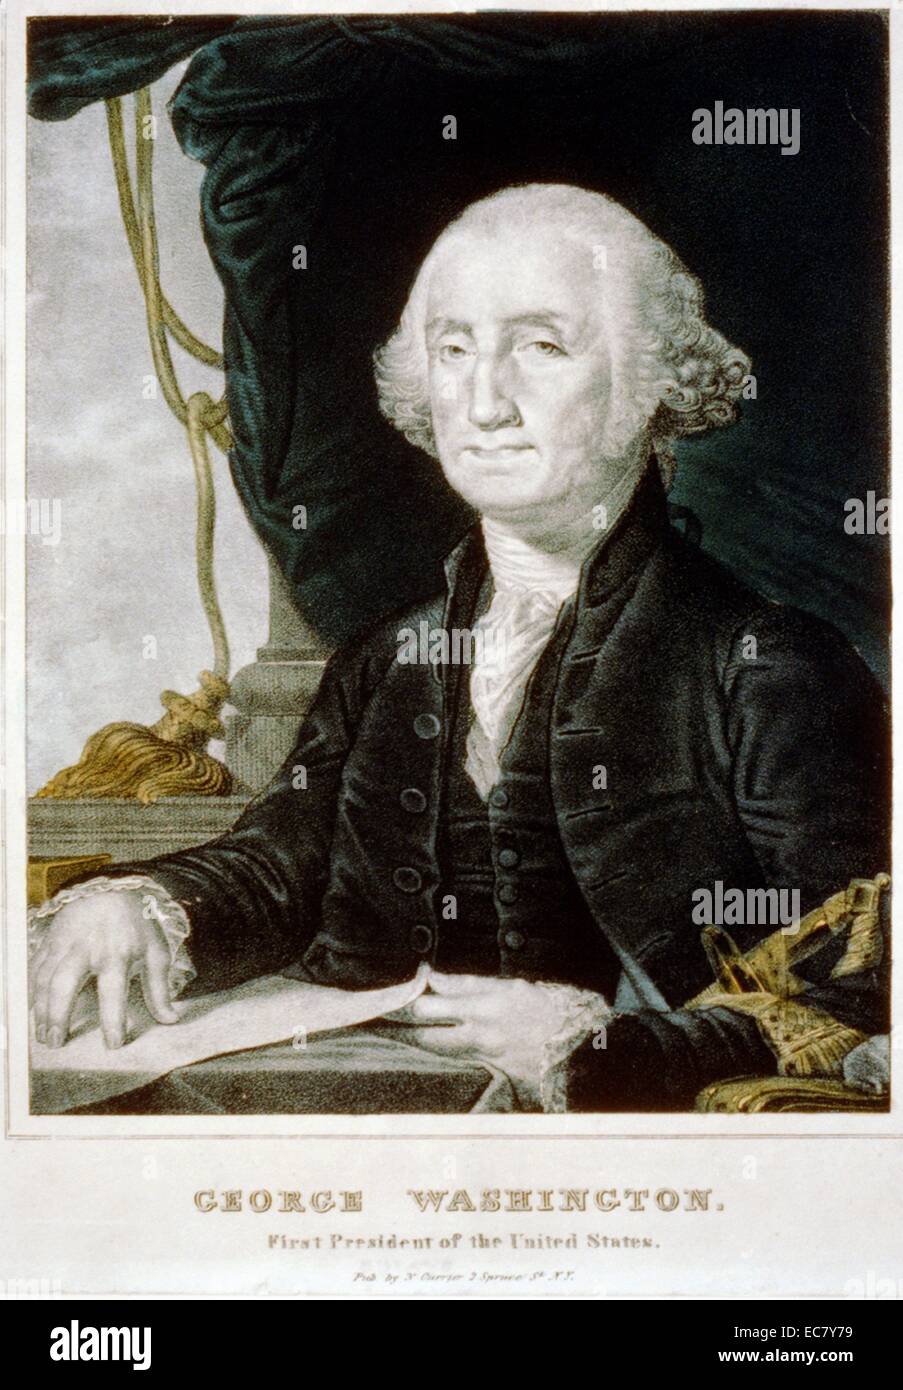 George Washington (1732-1799) è stato il primo Presidente degli Stati Uniti, il Comandante in Capo dell'esercito continentale durante la guerra rivoluzionaria americana e uno dei padri fondatori degli Stati Uniti. Ha presieduto la Convenzione che ha elaborato la costituzione degli Stati Uniti, che ha sostituito gli articoli della Confederazione e rimane la legge suprema della terra. Foto Stock